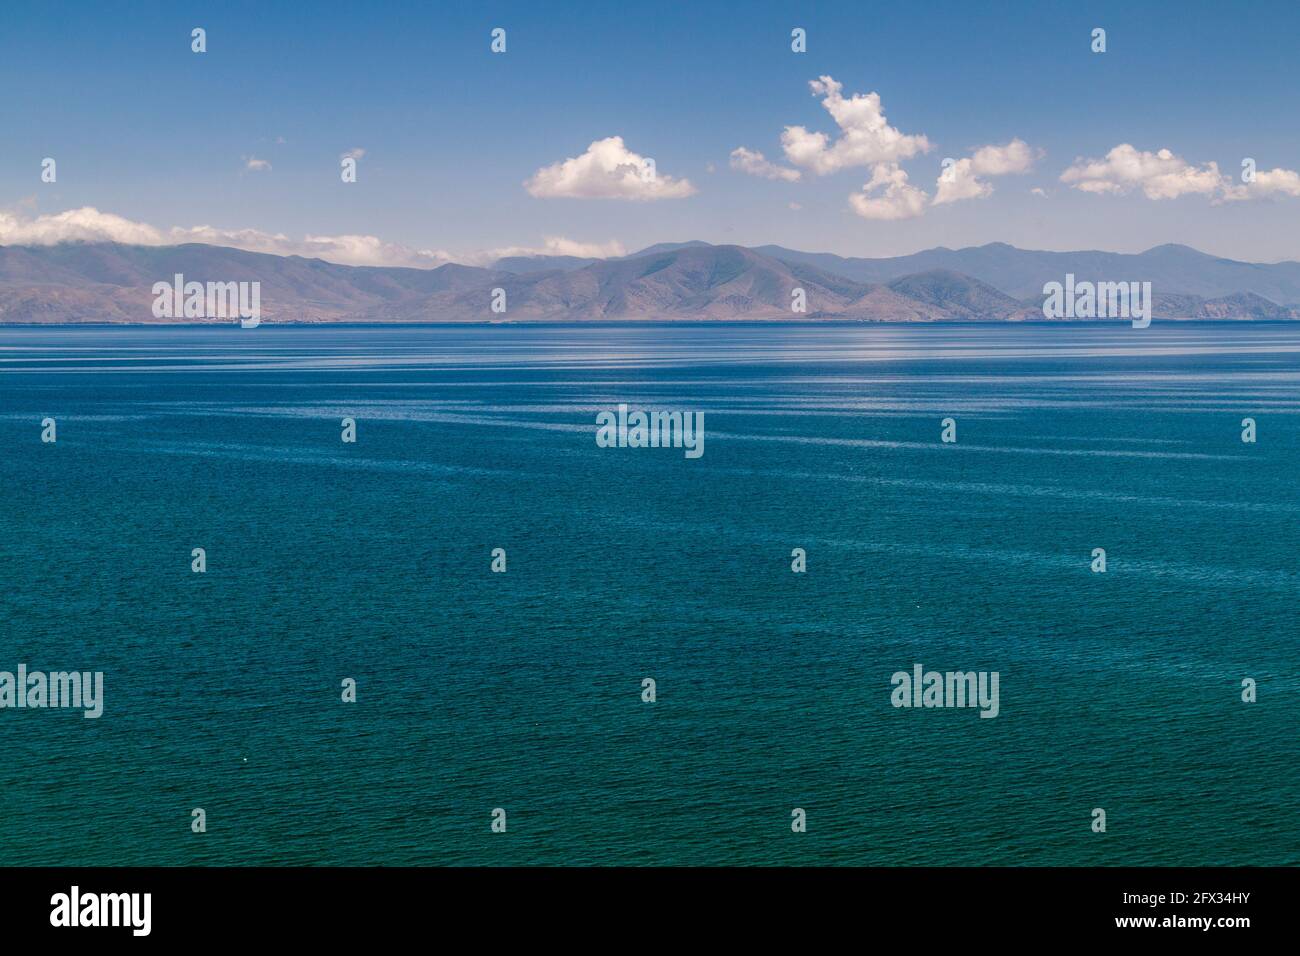 Montañas y lago Sevan en Armenia Foto de stock